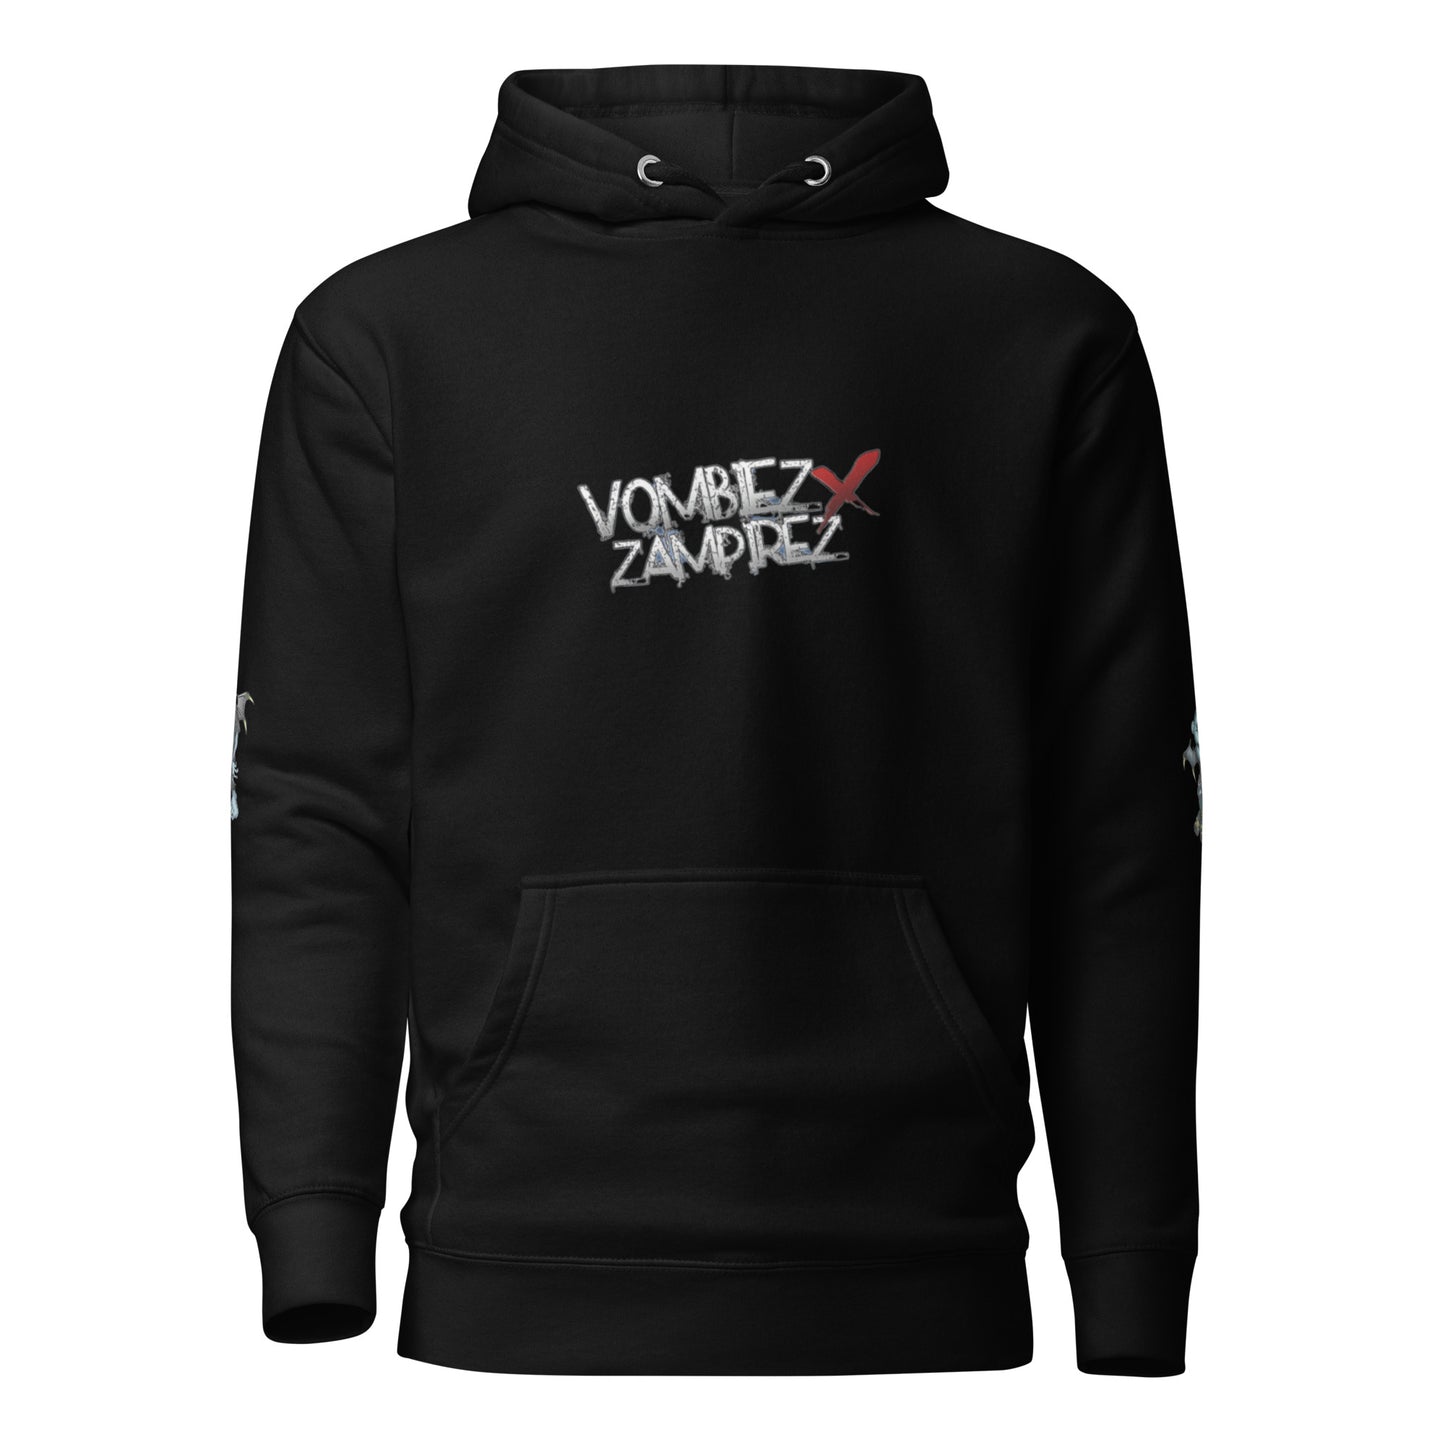 Vombiez x Zampirez Front Logo Hoodie